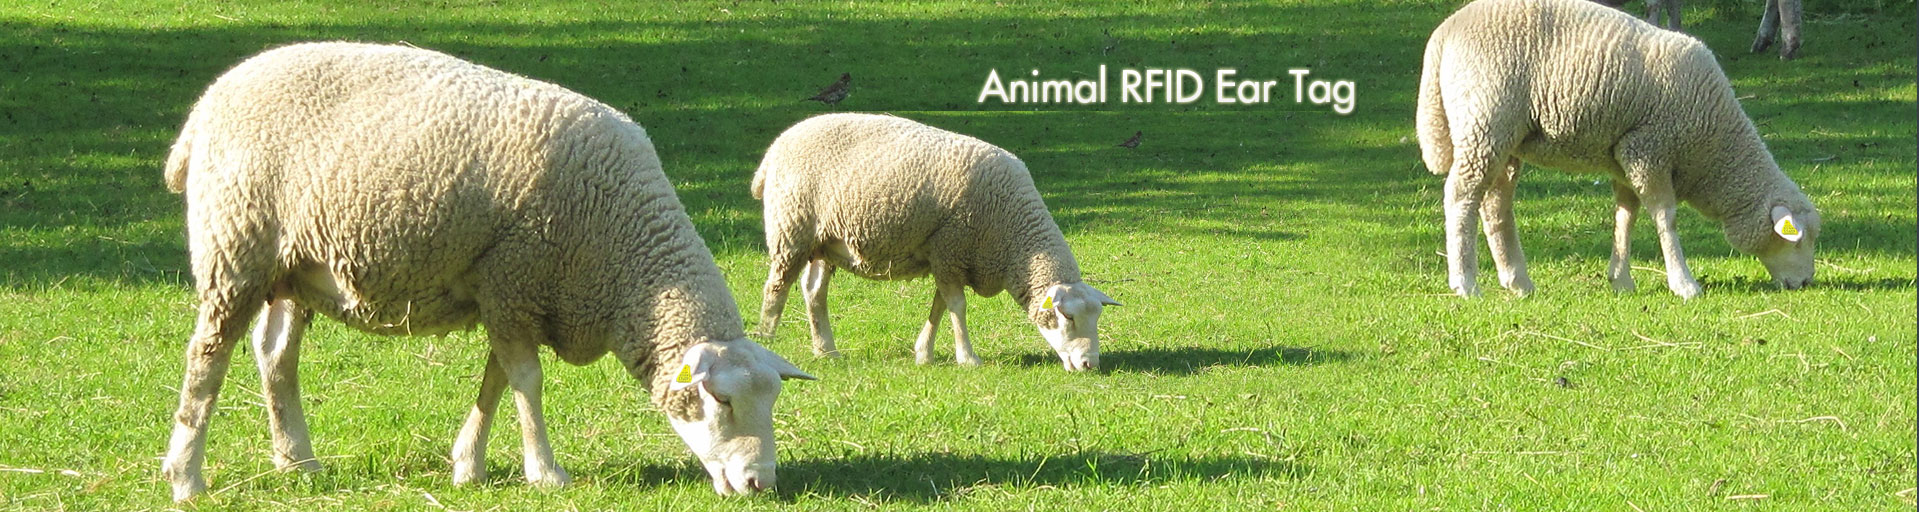 RFID Animal Ear Tag